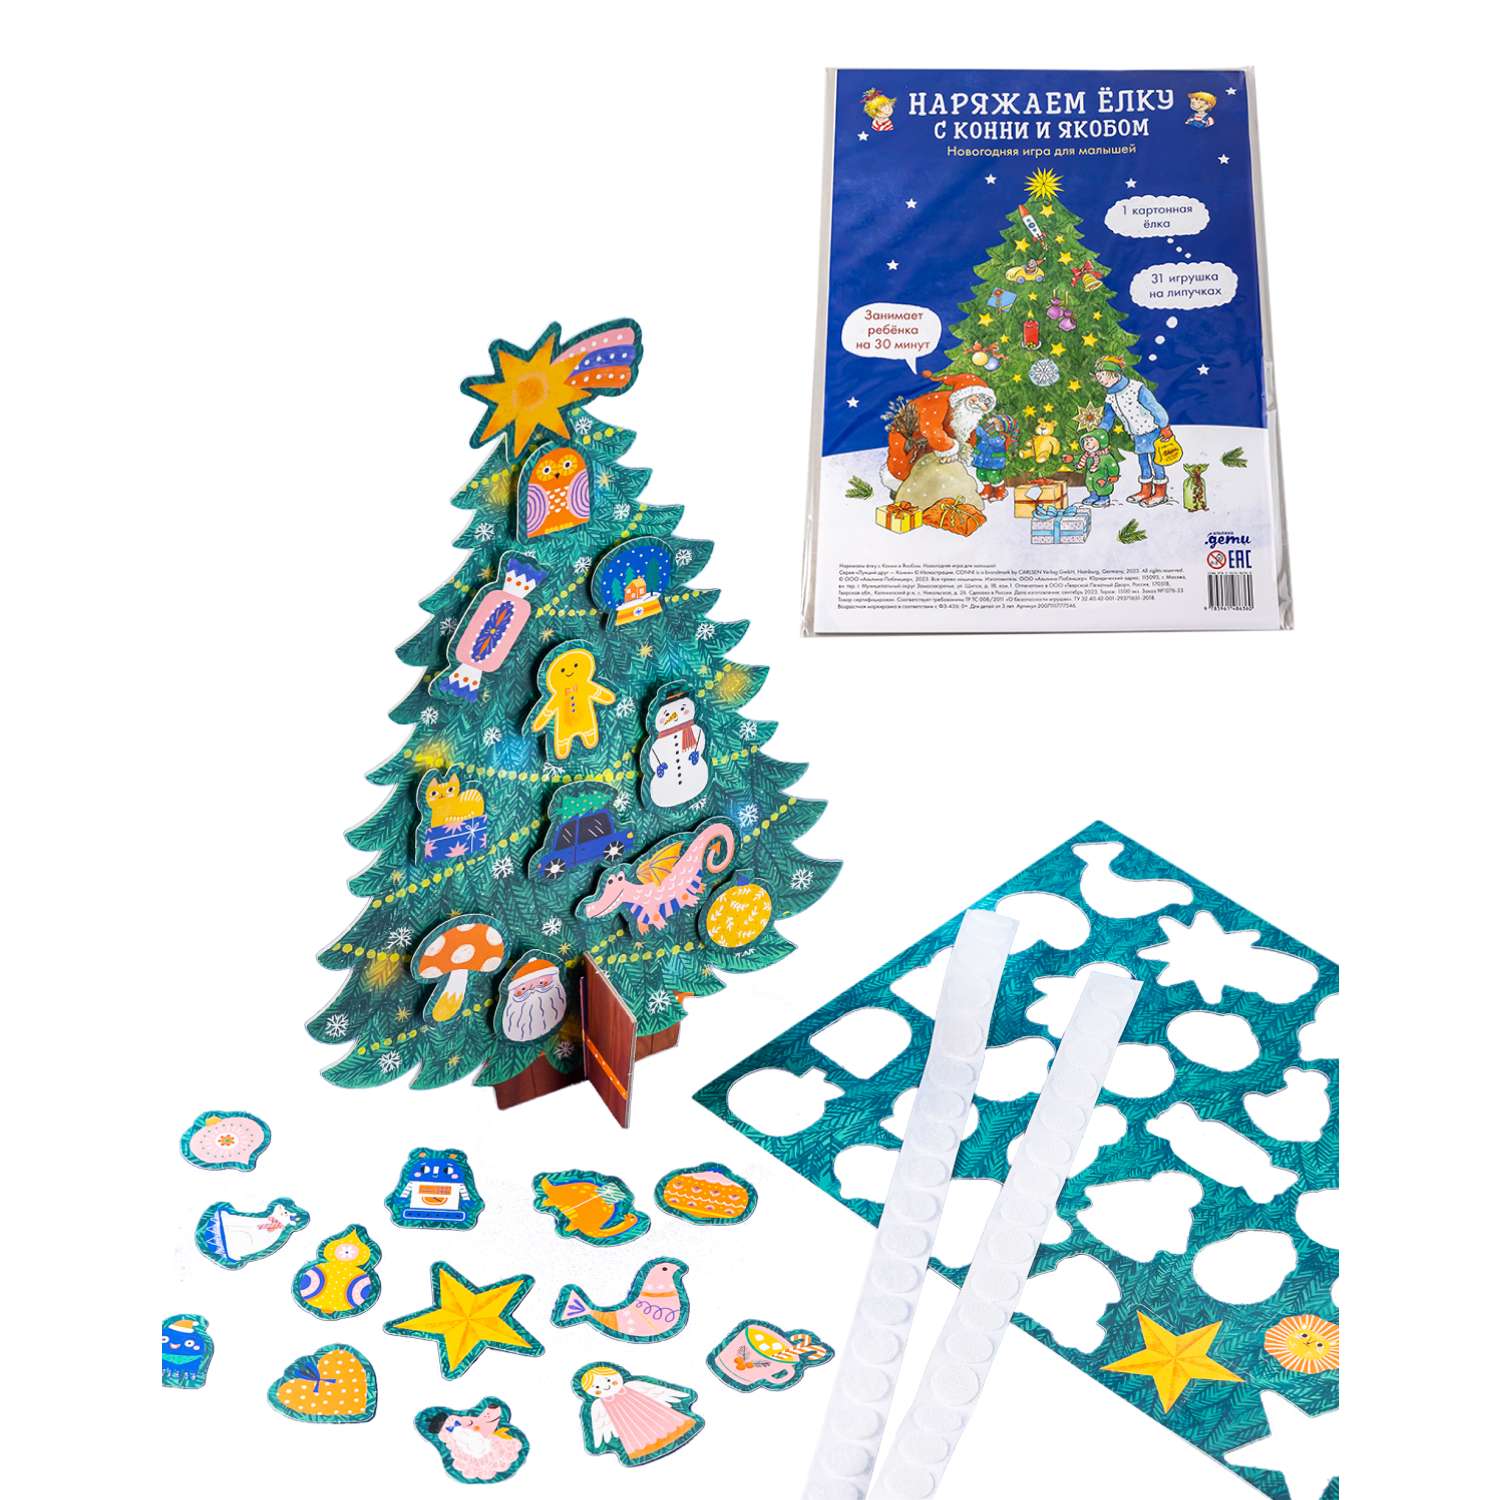 Книга Альпина. Дети Подарок на Новый год под ёлку от Конни/ комплект книг и игр - фото 10